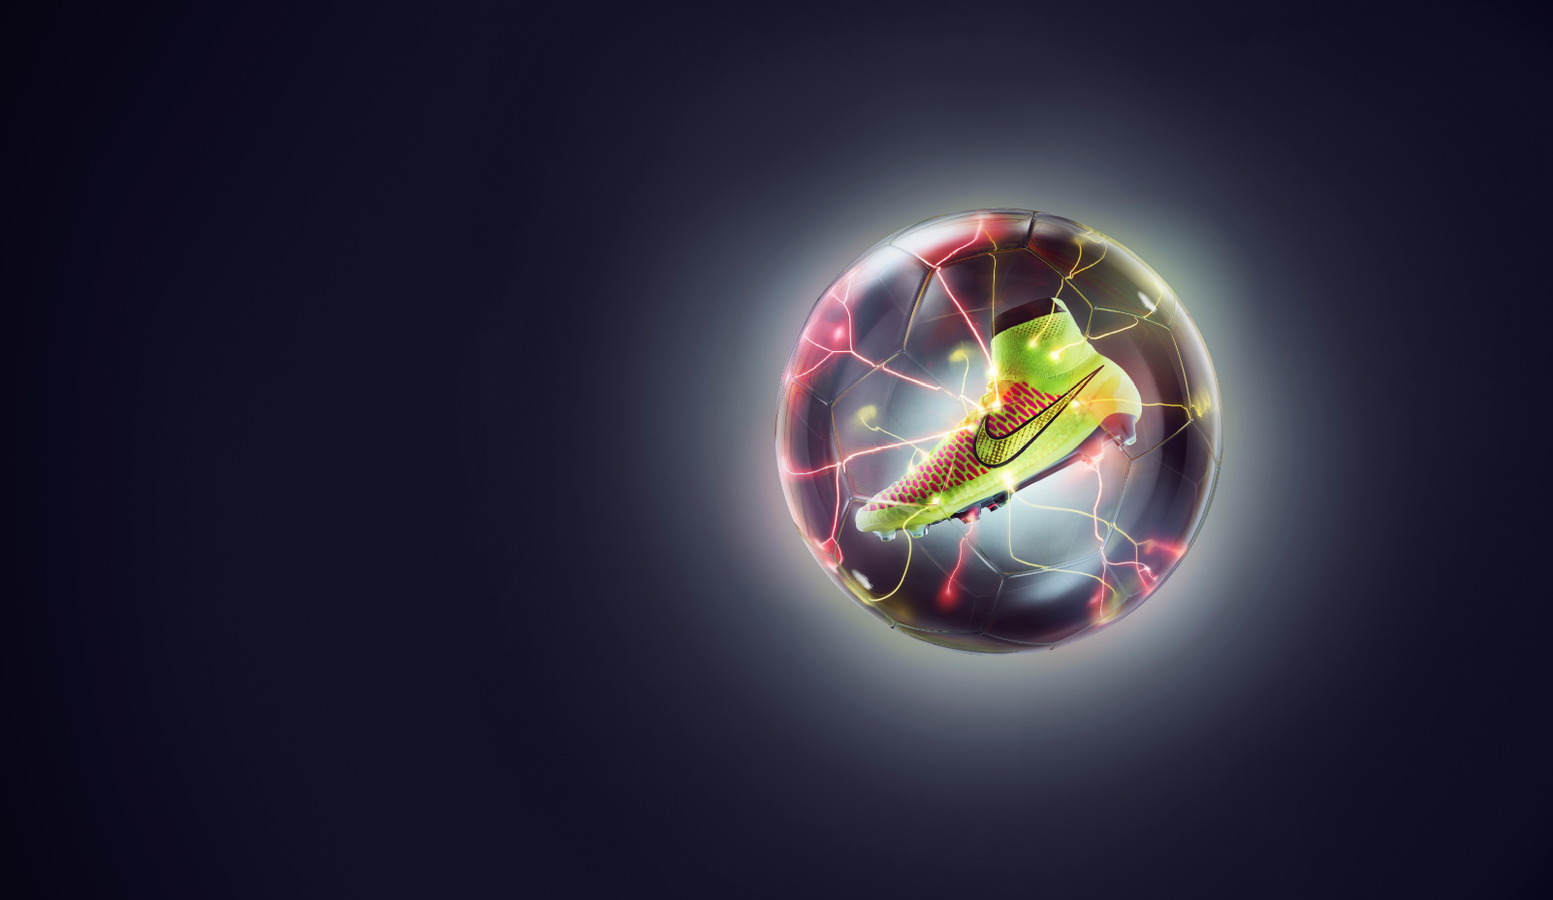 Nike Magista